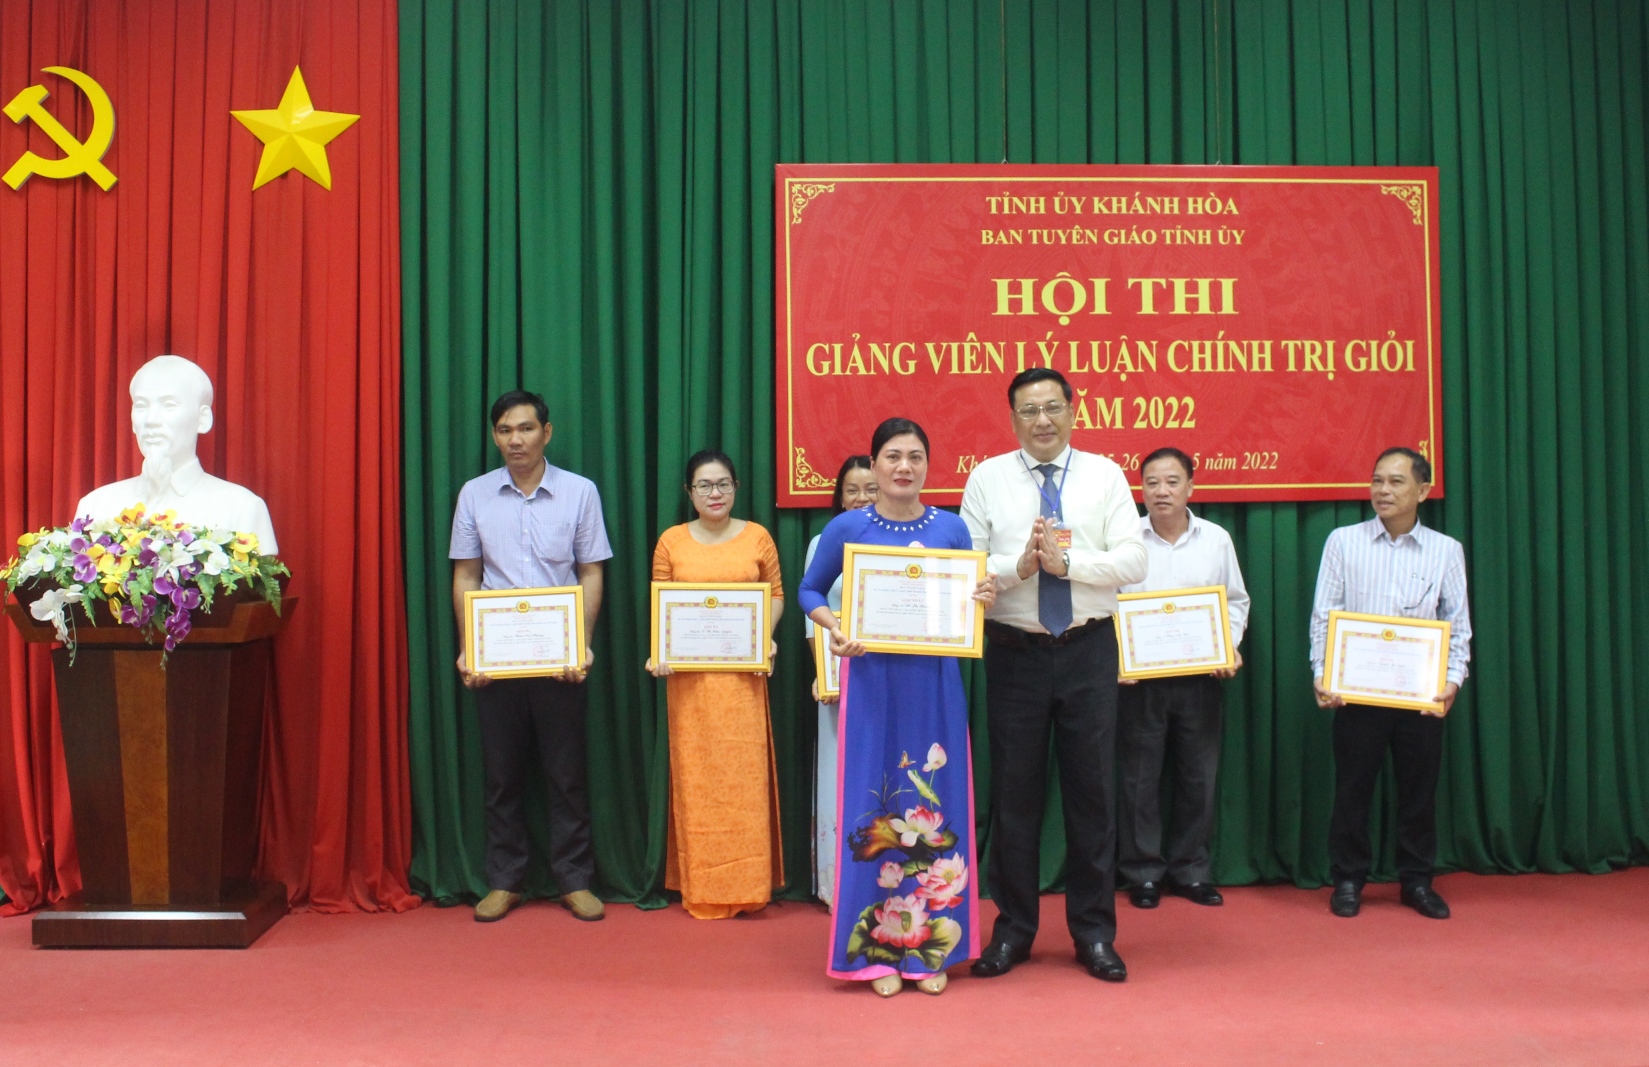 Ông Lê Hữu Thọ trao giải Nhất cho giảng viên Đỗ Thị Hương.